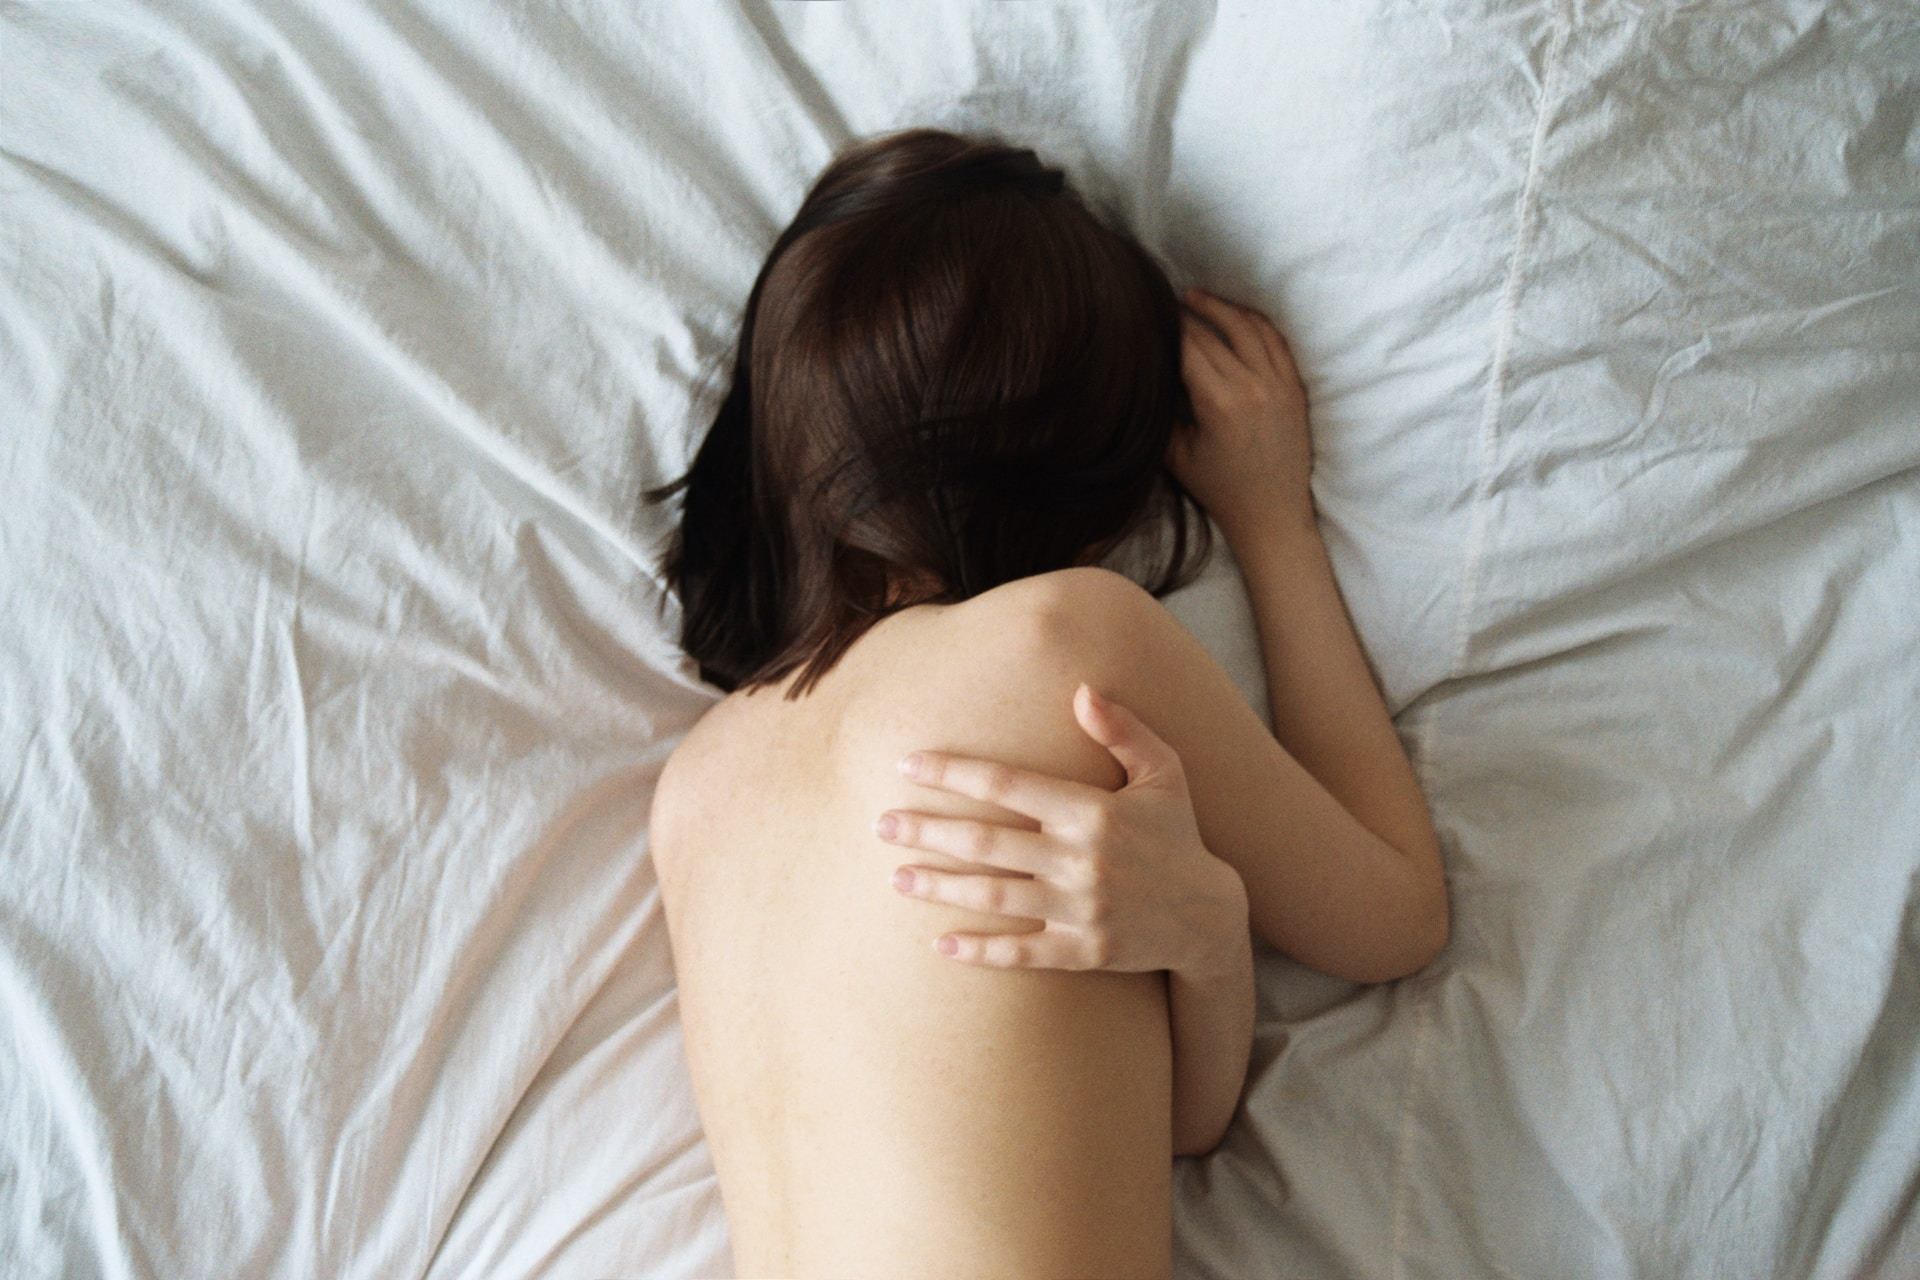 Dormir desnudo es beneficioso según la ciencia